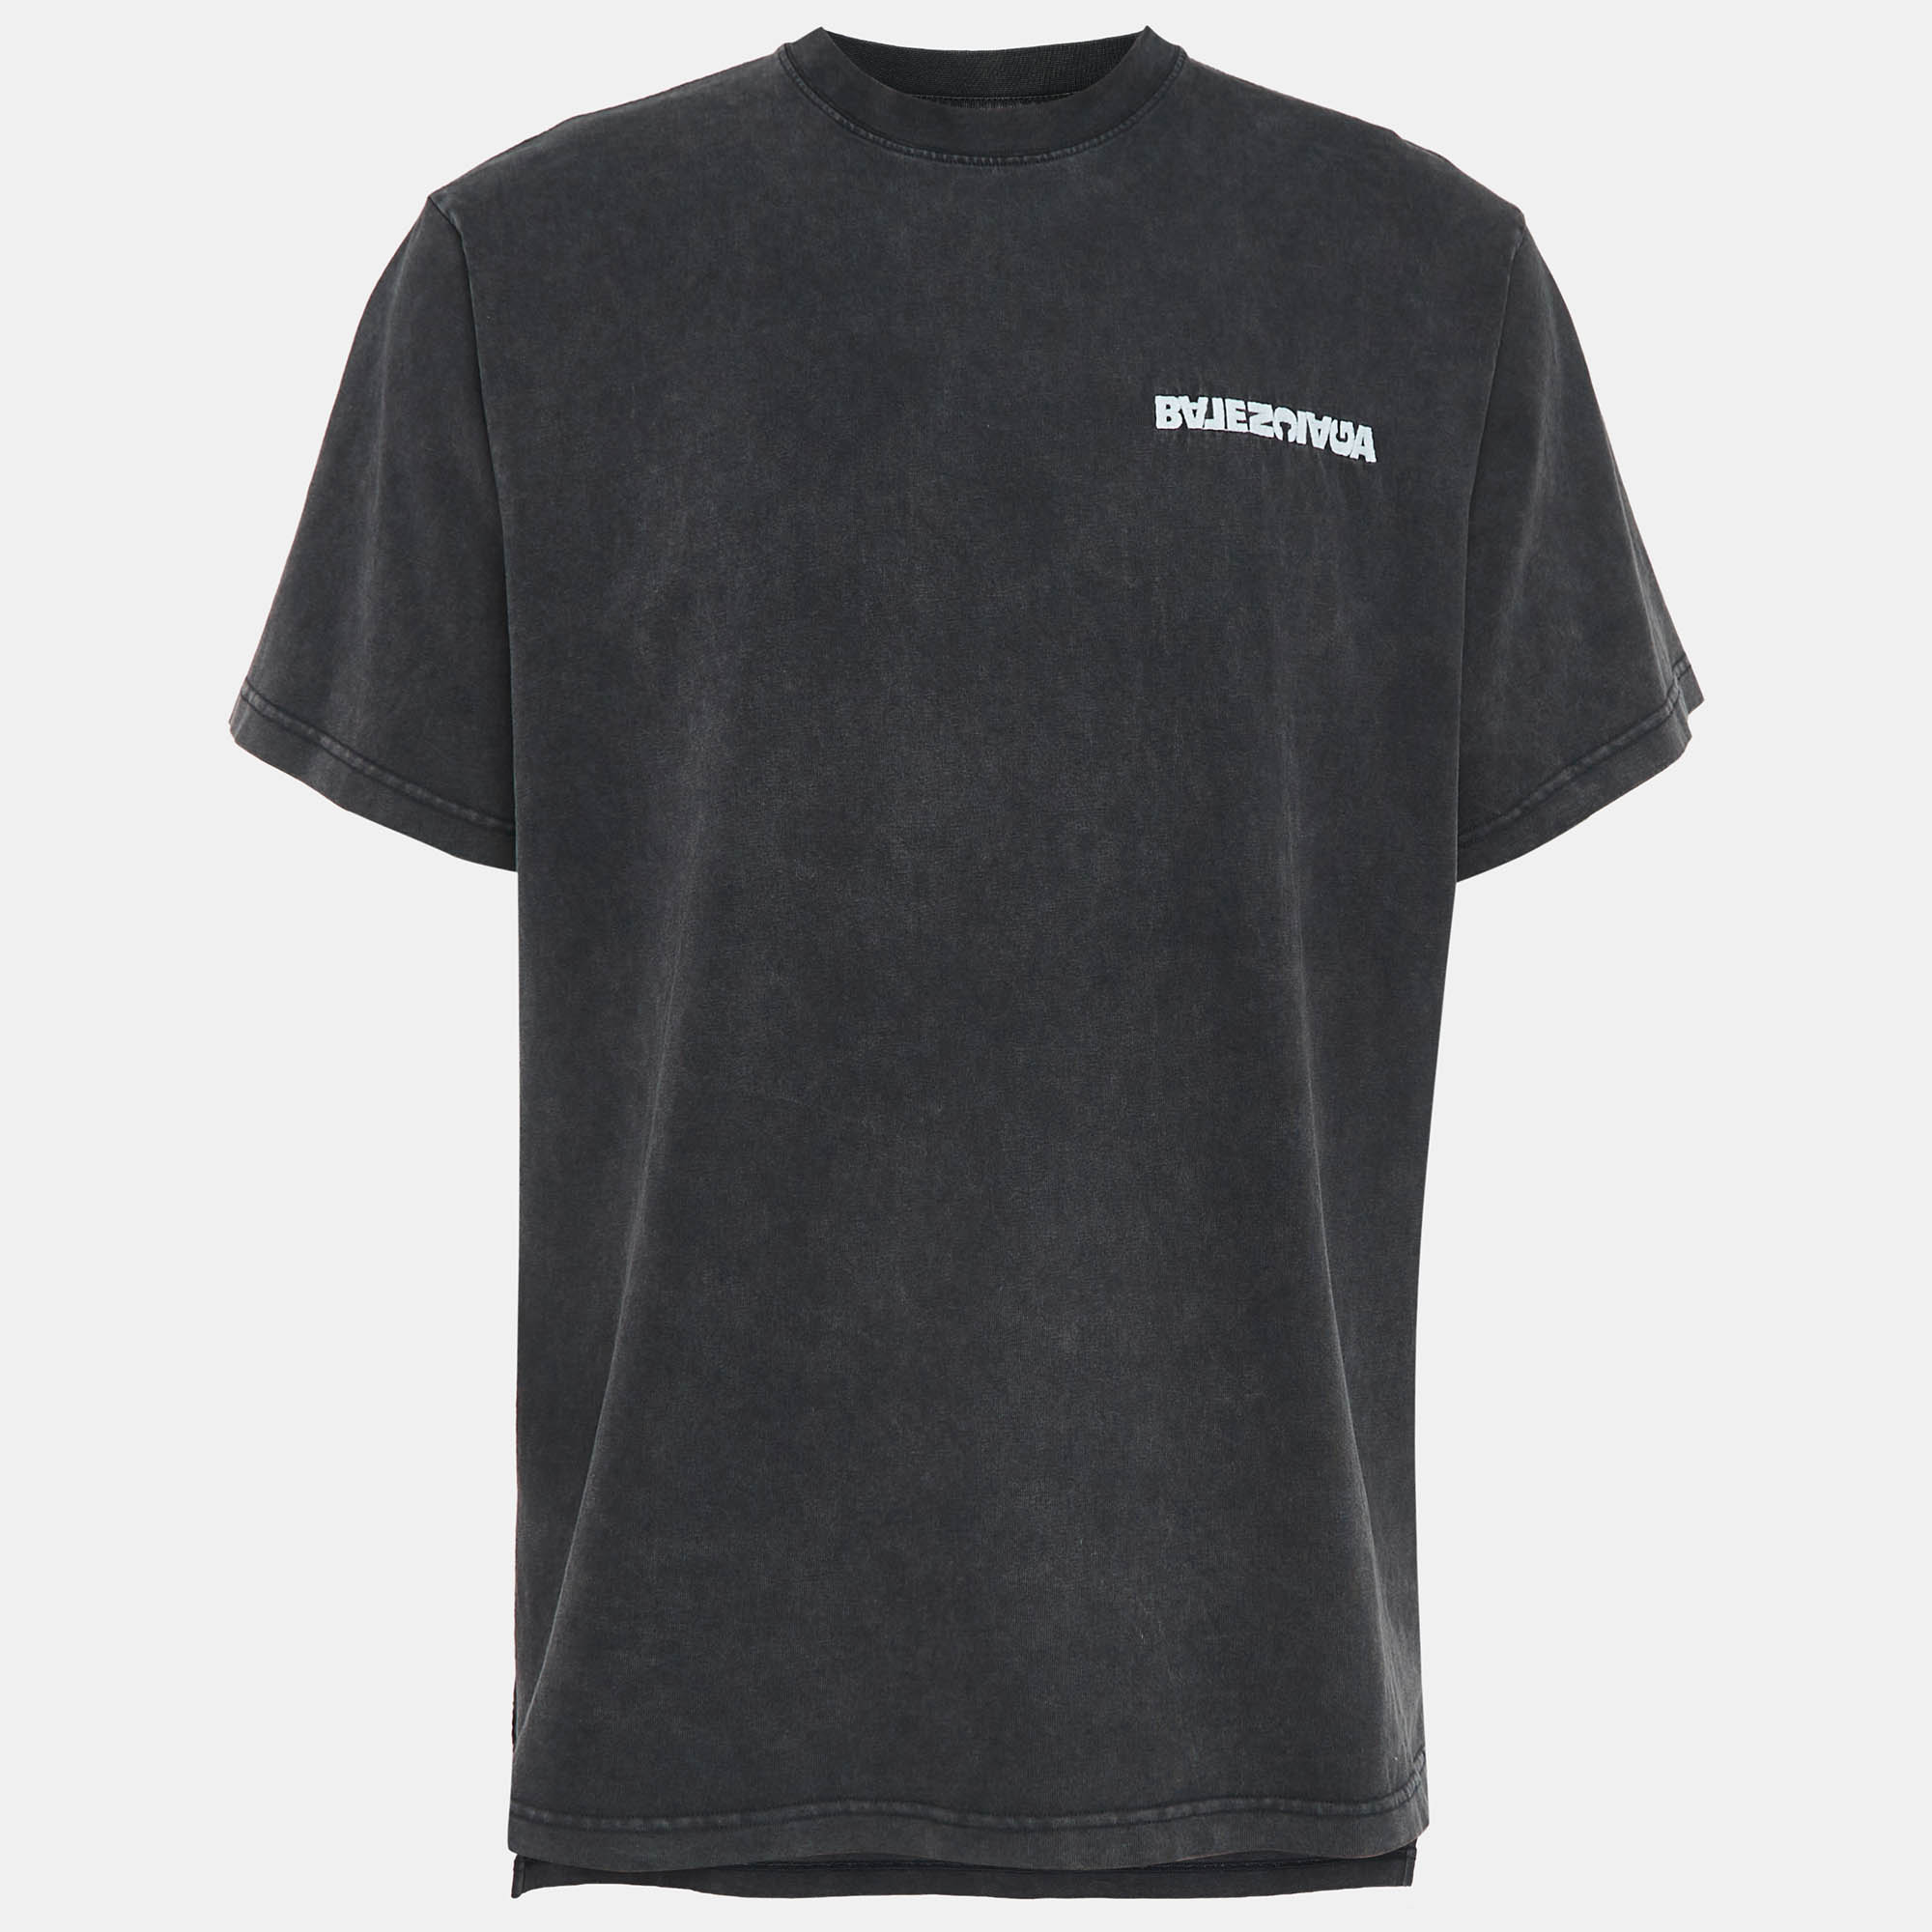 Balenciaga grey embroidered cotton t-shirt xl